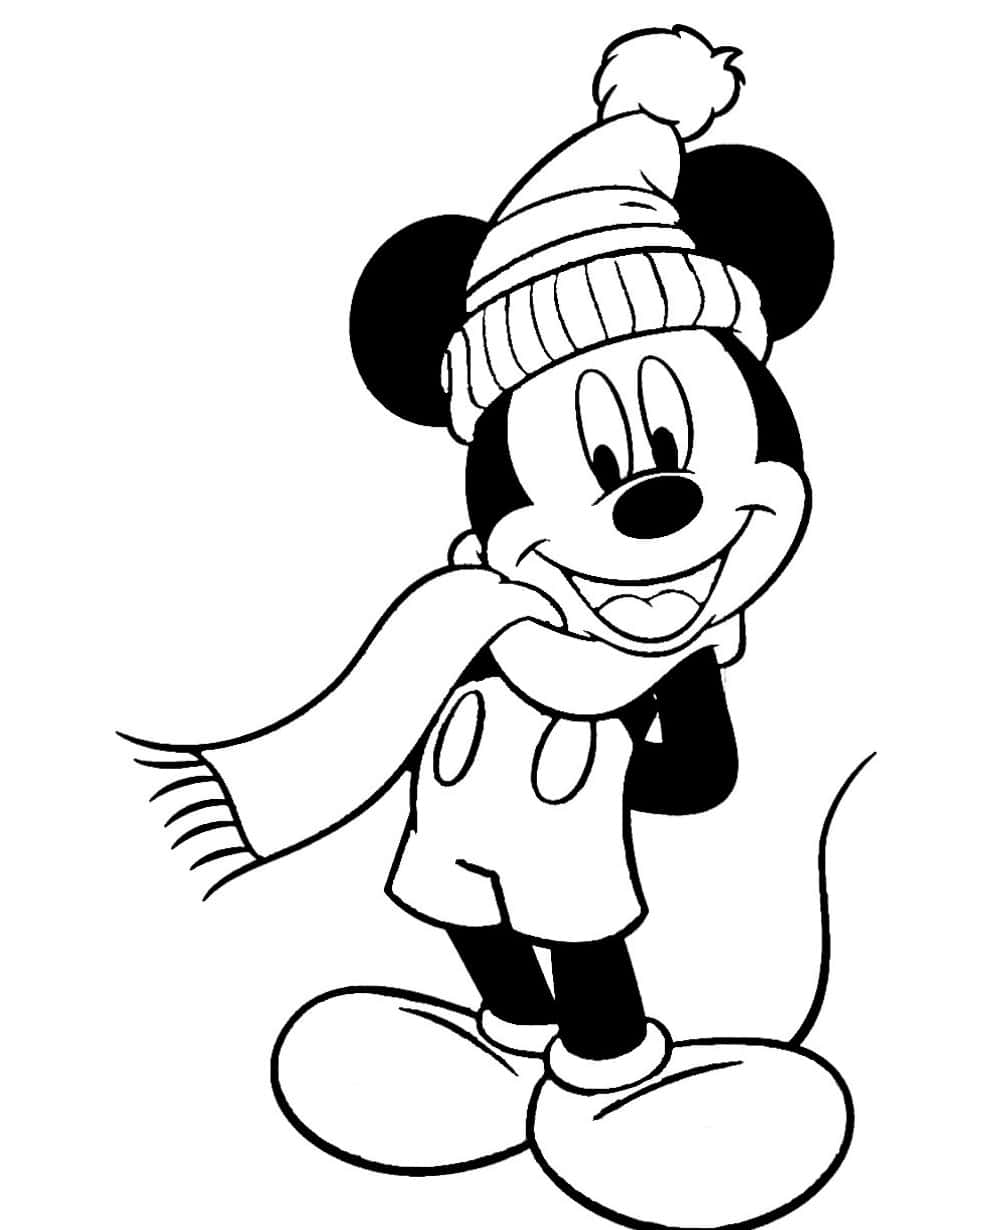 Divertenteattività Di Colorazione Con Topolino E Minnie Mouse